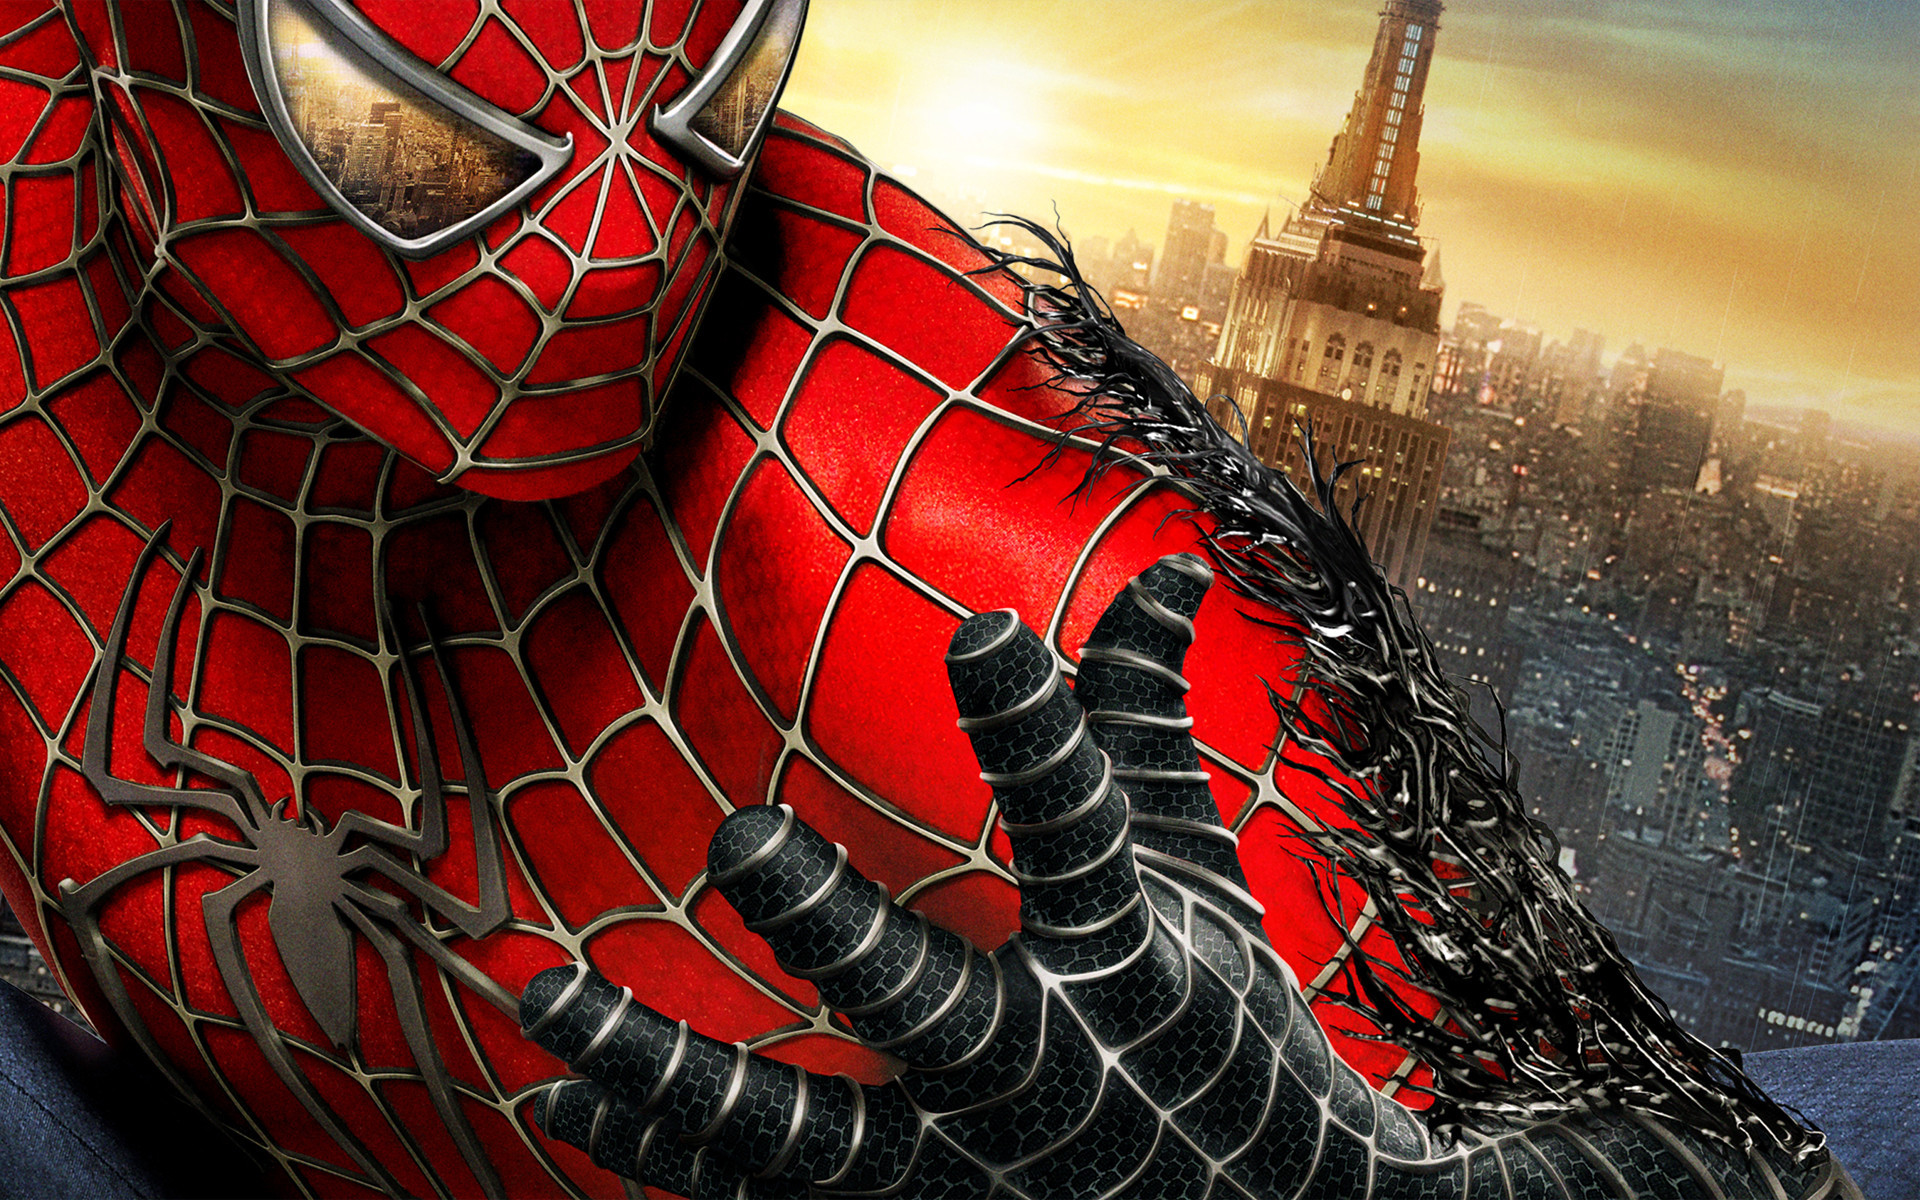 Hình nền Spiderman sẽ đưa bạn vào thế giới siêu anh hùng với vẻ đẹp mạnh mẽ và cá tính đặc trưng của Người Nhện.